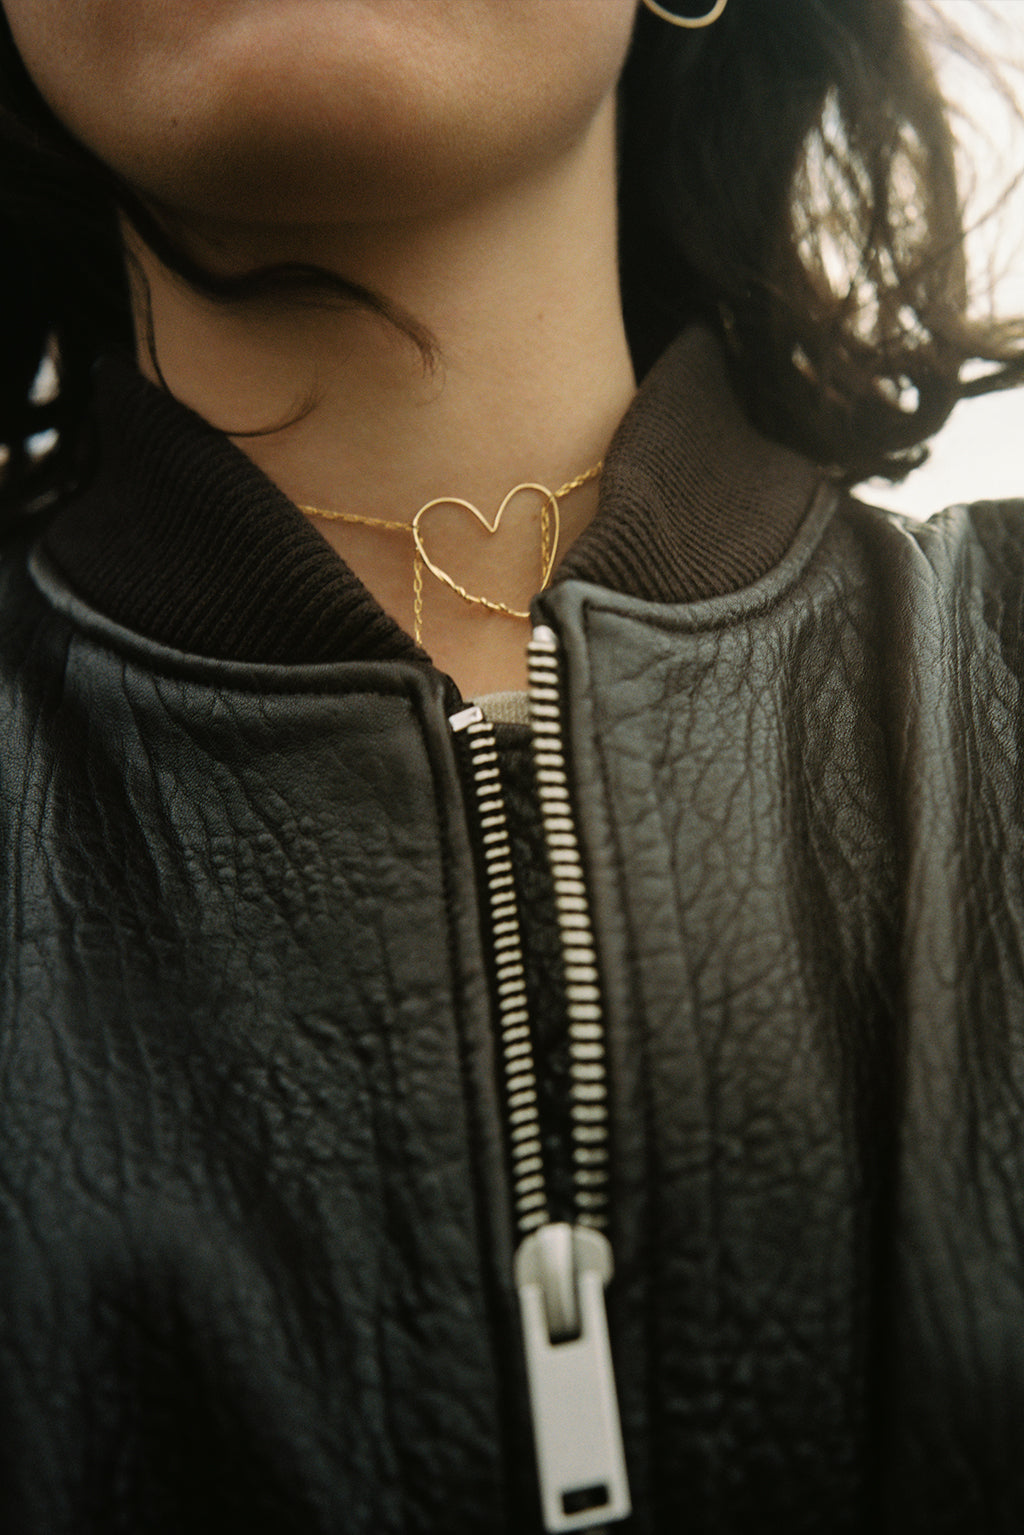 Fine ligne d'amour gold necklace